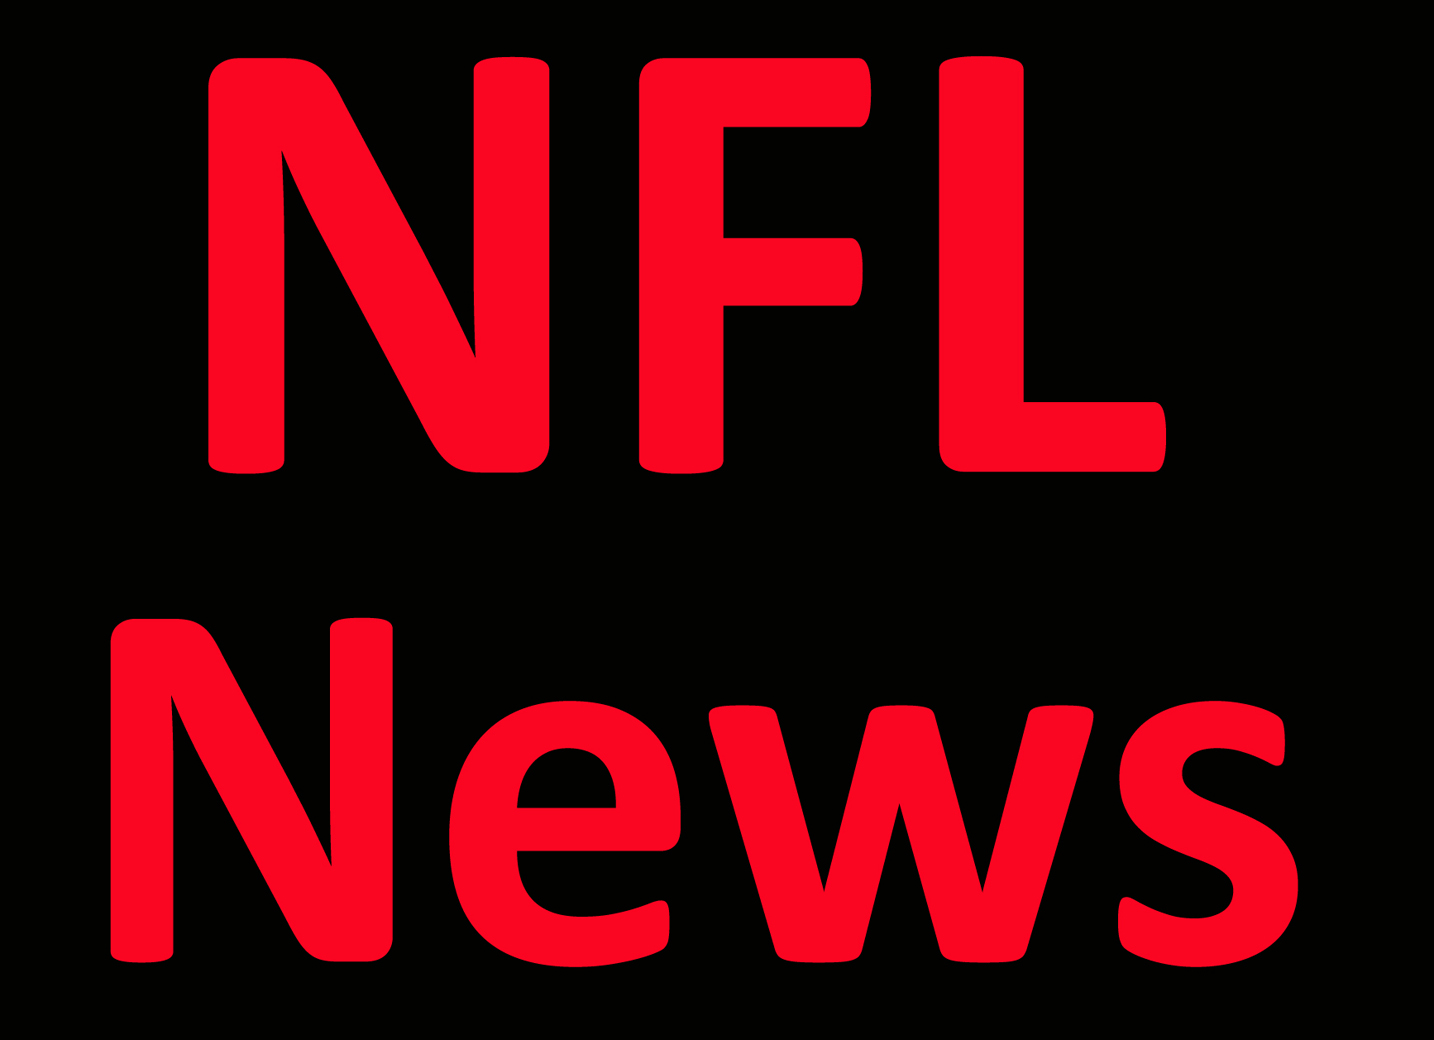 NFL News: ESPN experts predict the Super Bowl LVI winner, score and MVP Per Report